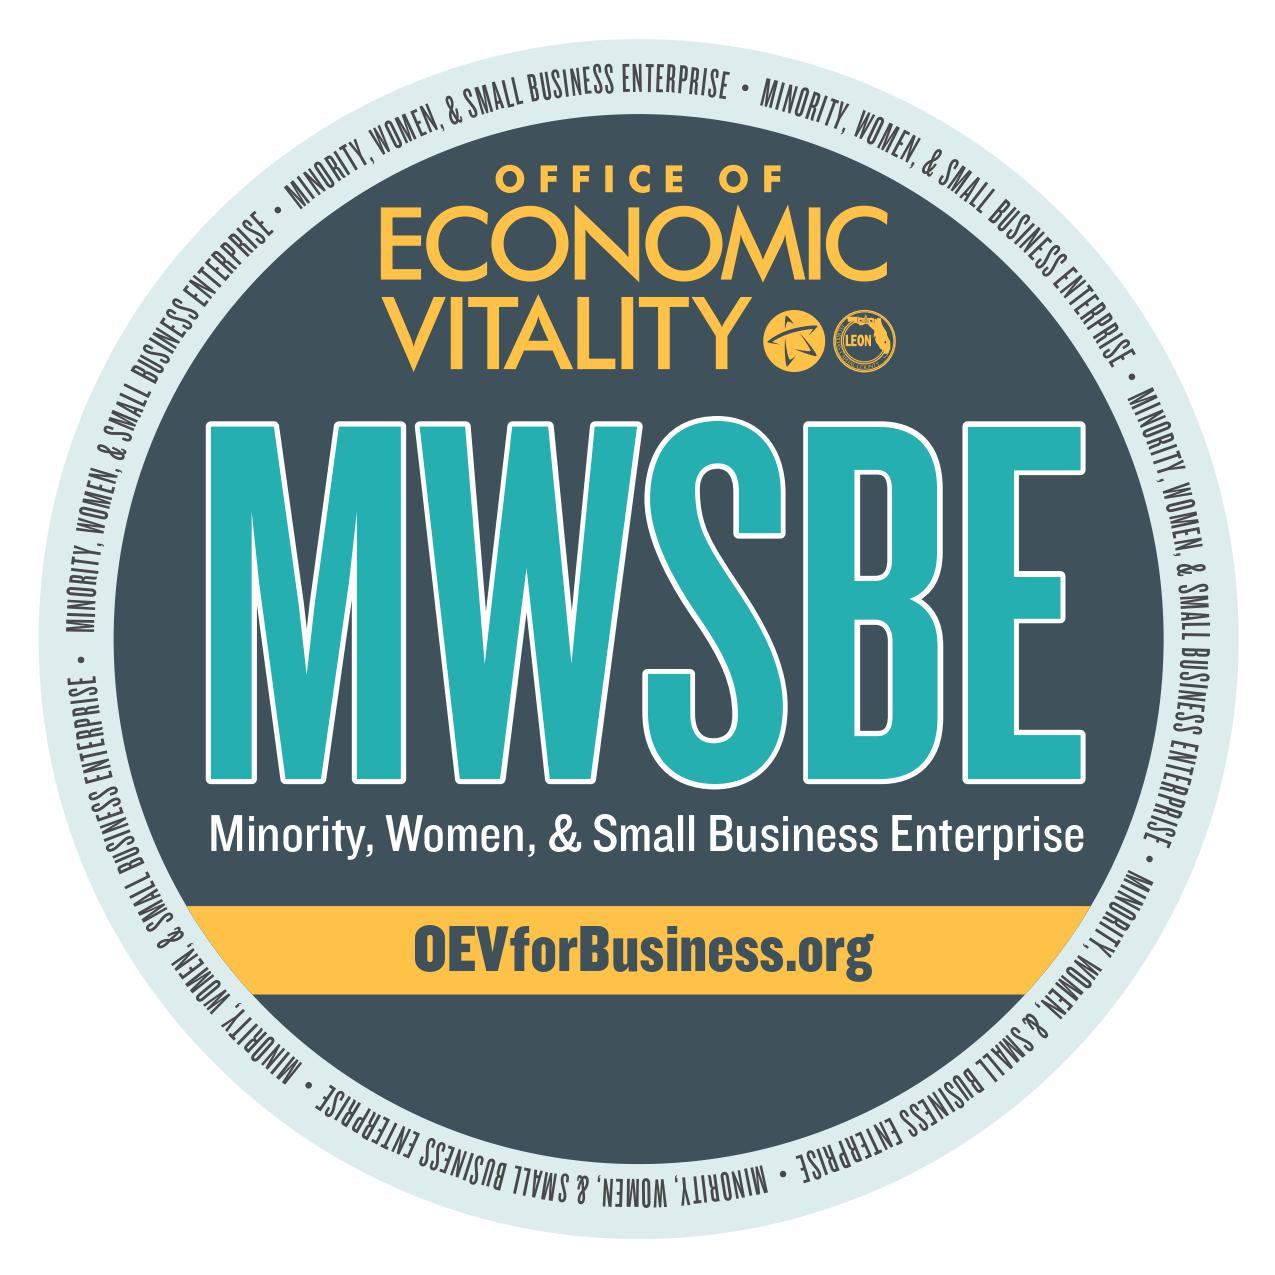 MWSBE Office of Economic Vitality